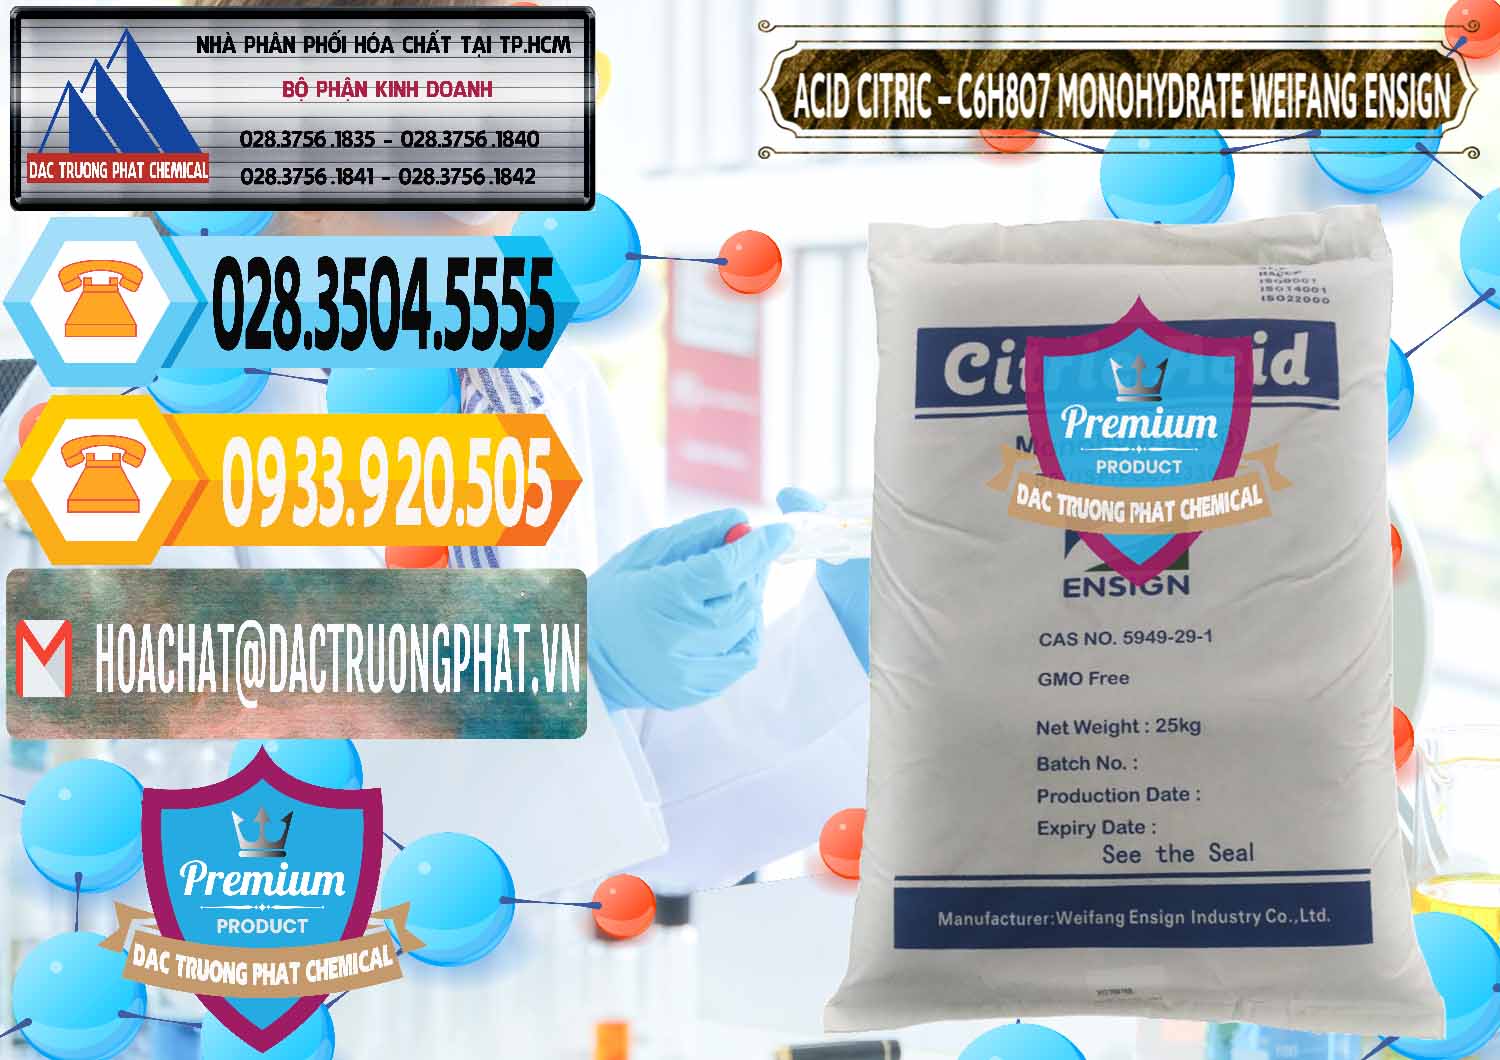 Cty chuyên phân phối và bán Acid Citric - Axit Citric Monohydrate Weifang Trung Quốc China - 0009 - Nhà cung cấp & phân phối hóa chất tại TP.HCM - hoachattayrua.net